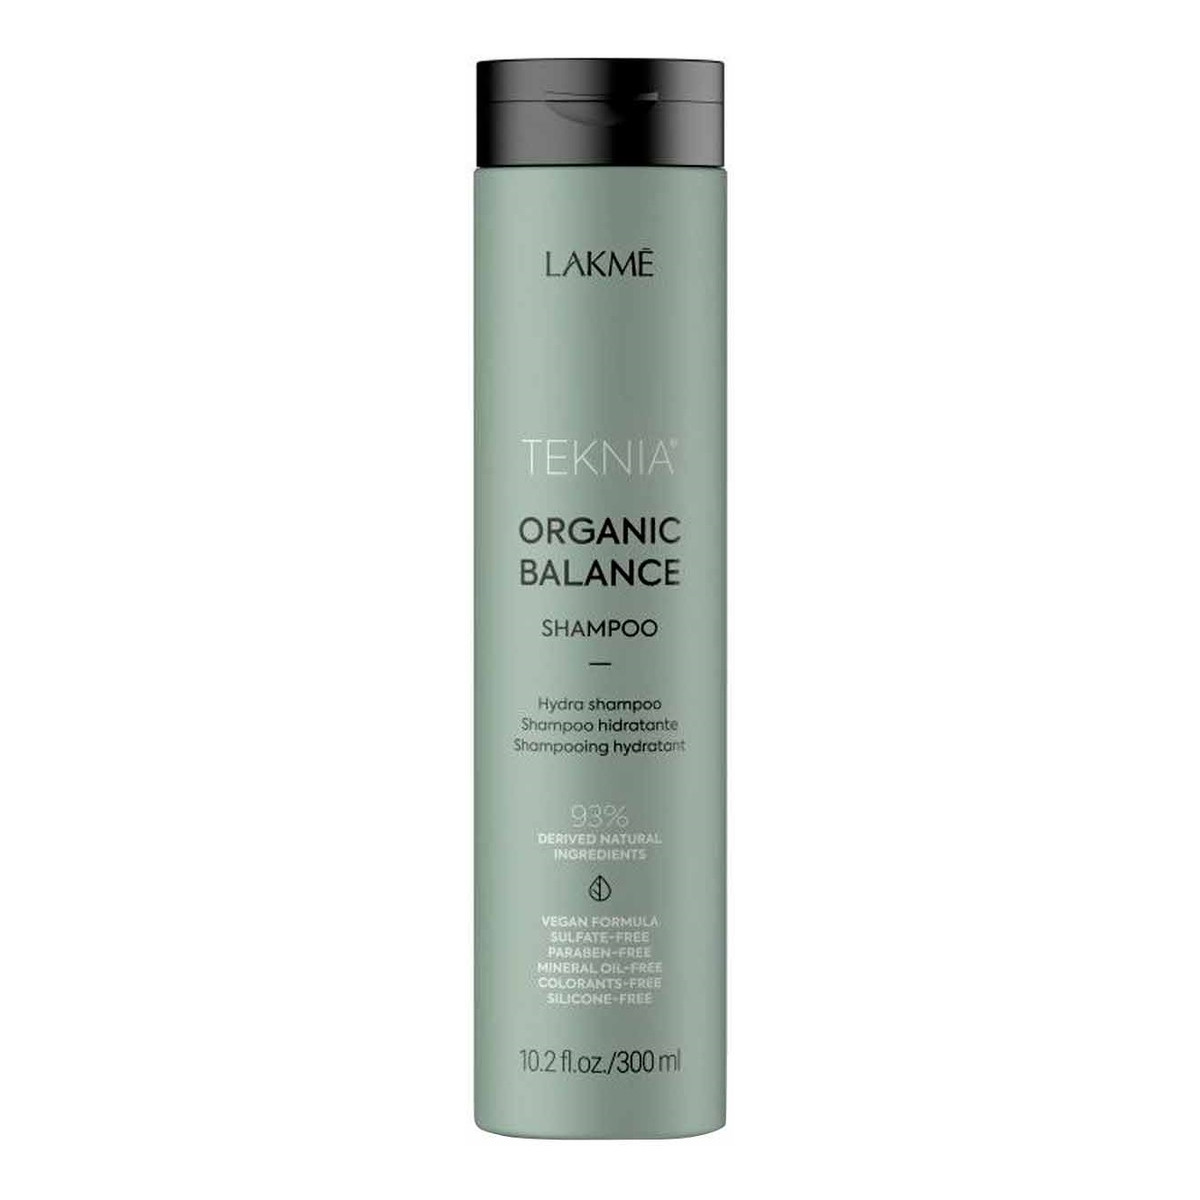 Lakme Teknia organic balance shampoo szampon nawilżający do każdego rodzaju włosów 300ml